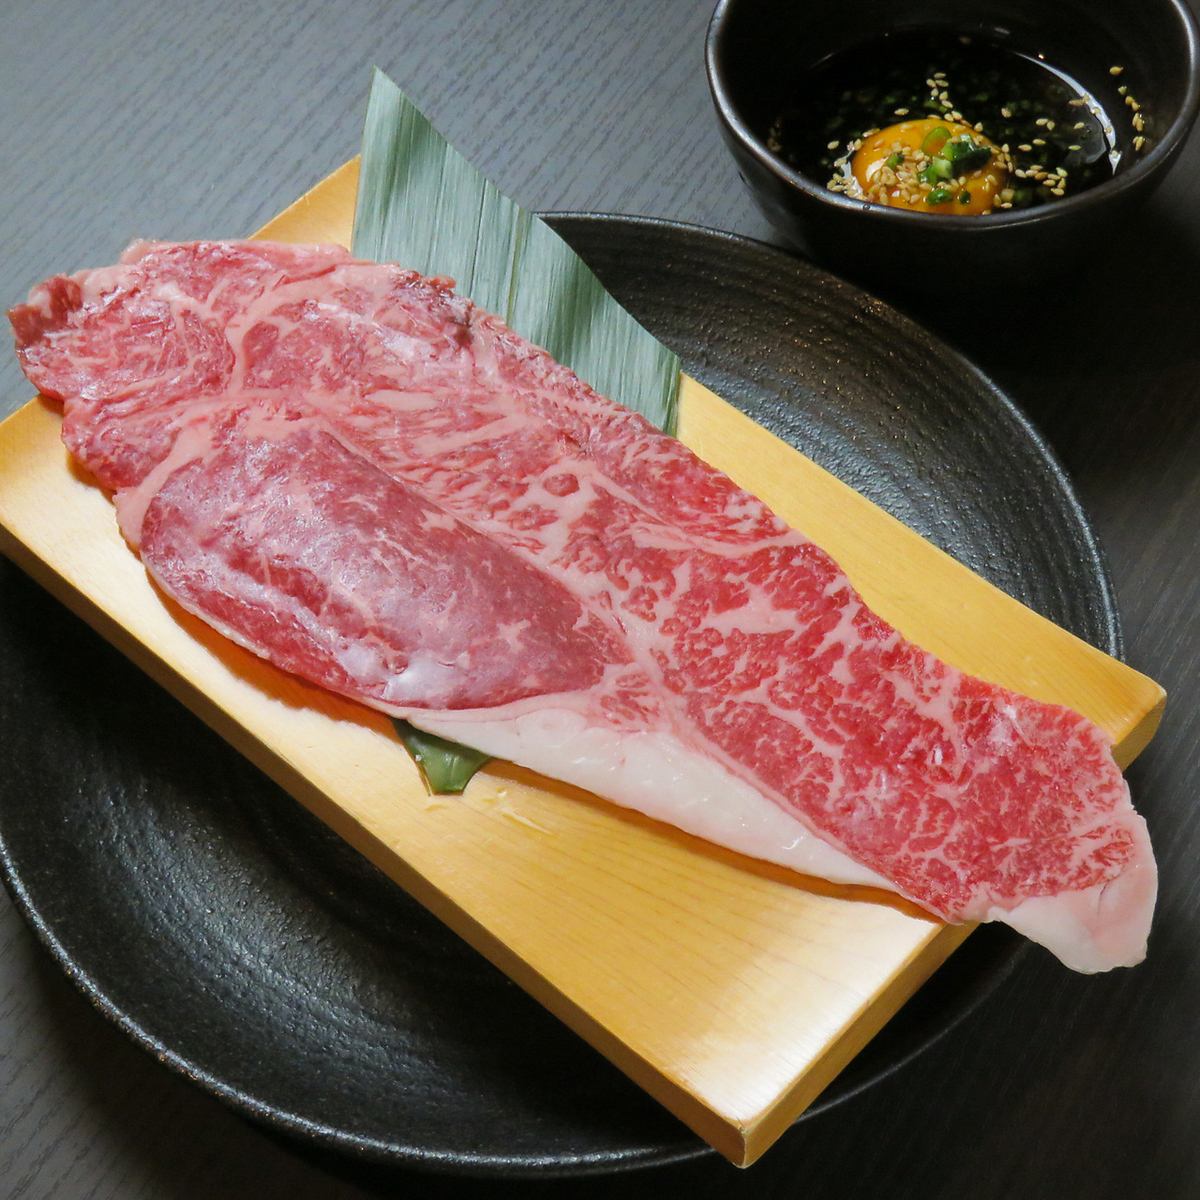 烤肉餐廳，您可以以合理的價格享用稀有的日本牛肉和厚舌片〜Mashigura〜